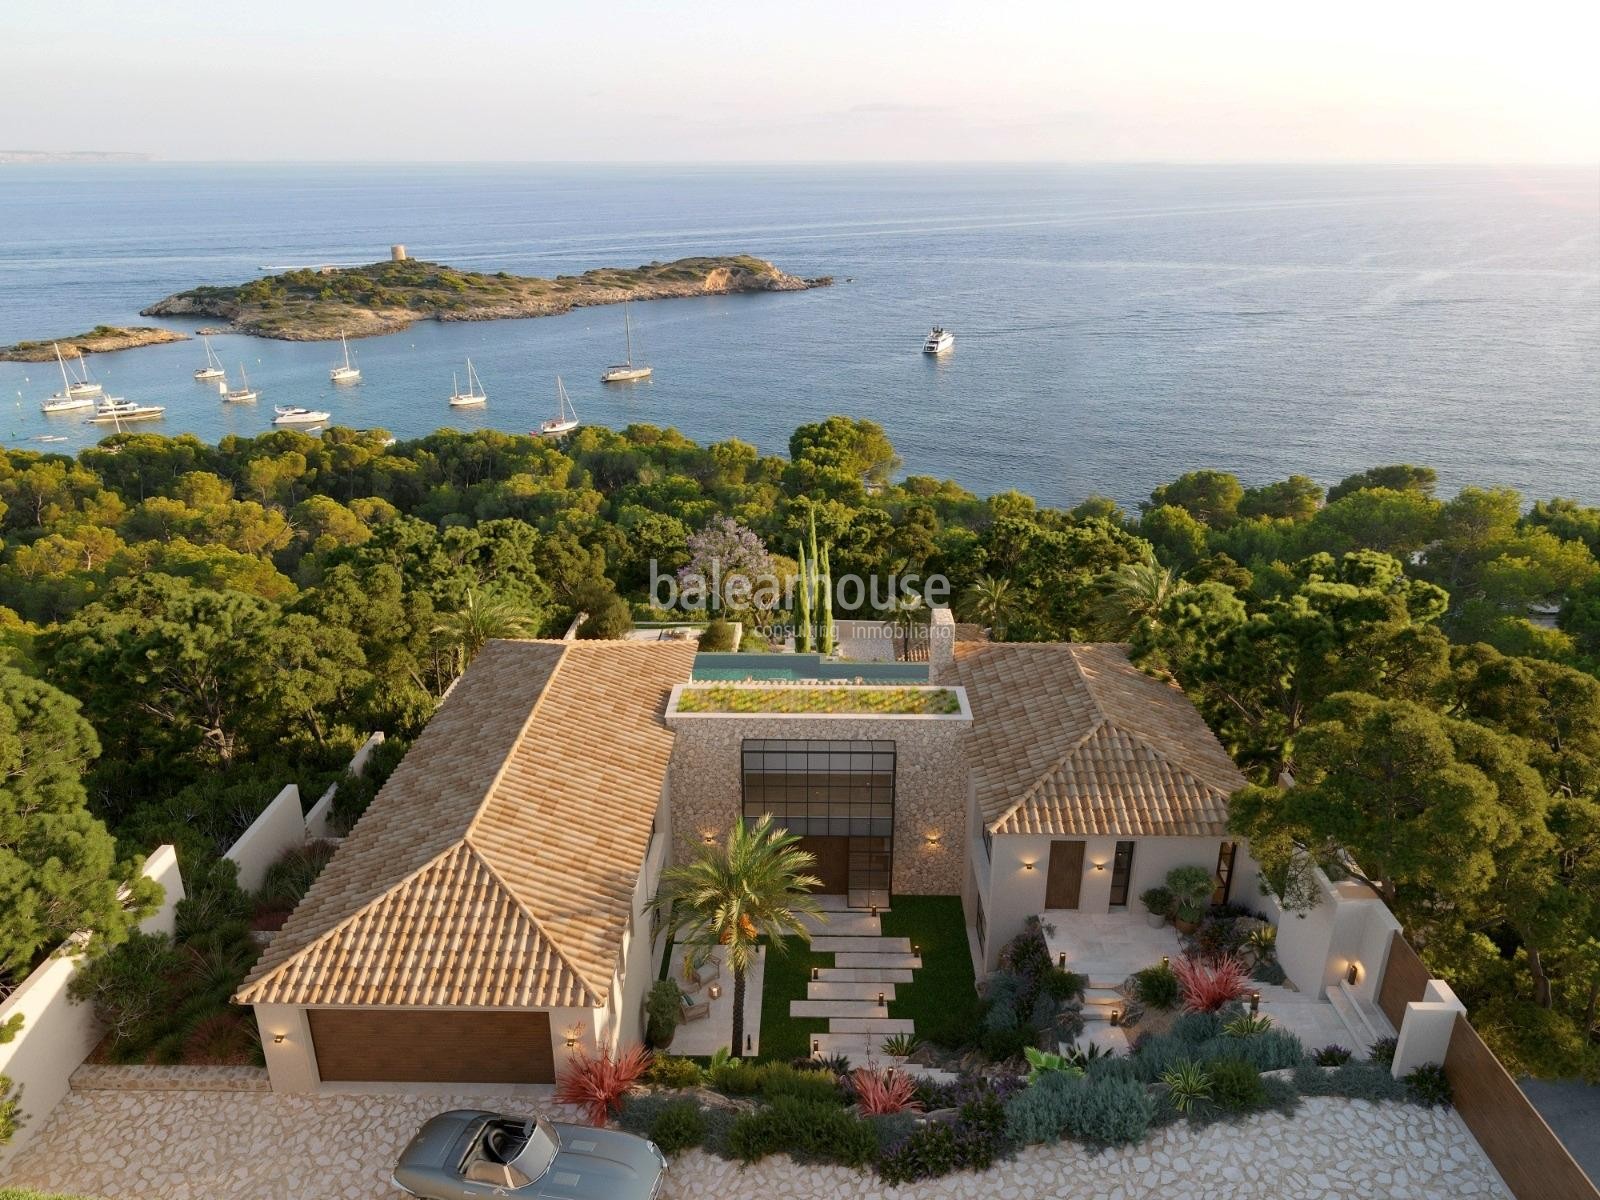 Gran villa de obra nueva con un elegante diseño contemporáneo y vistas deslumbrantes al mar.